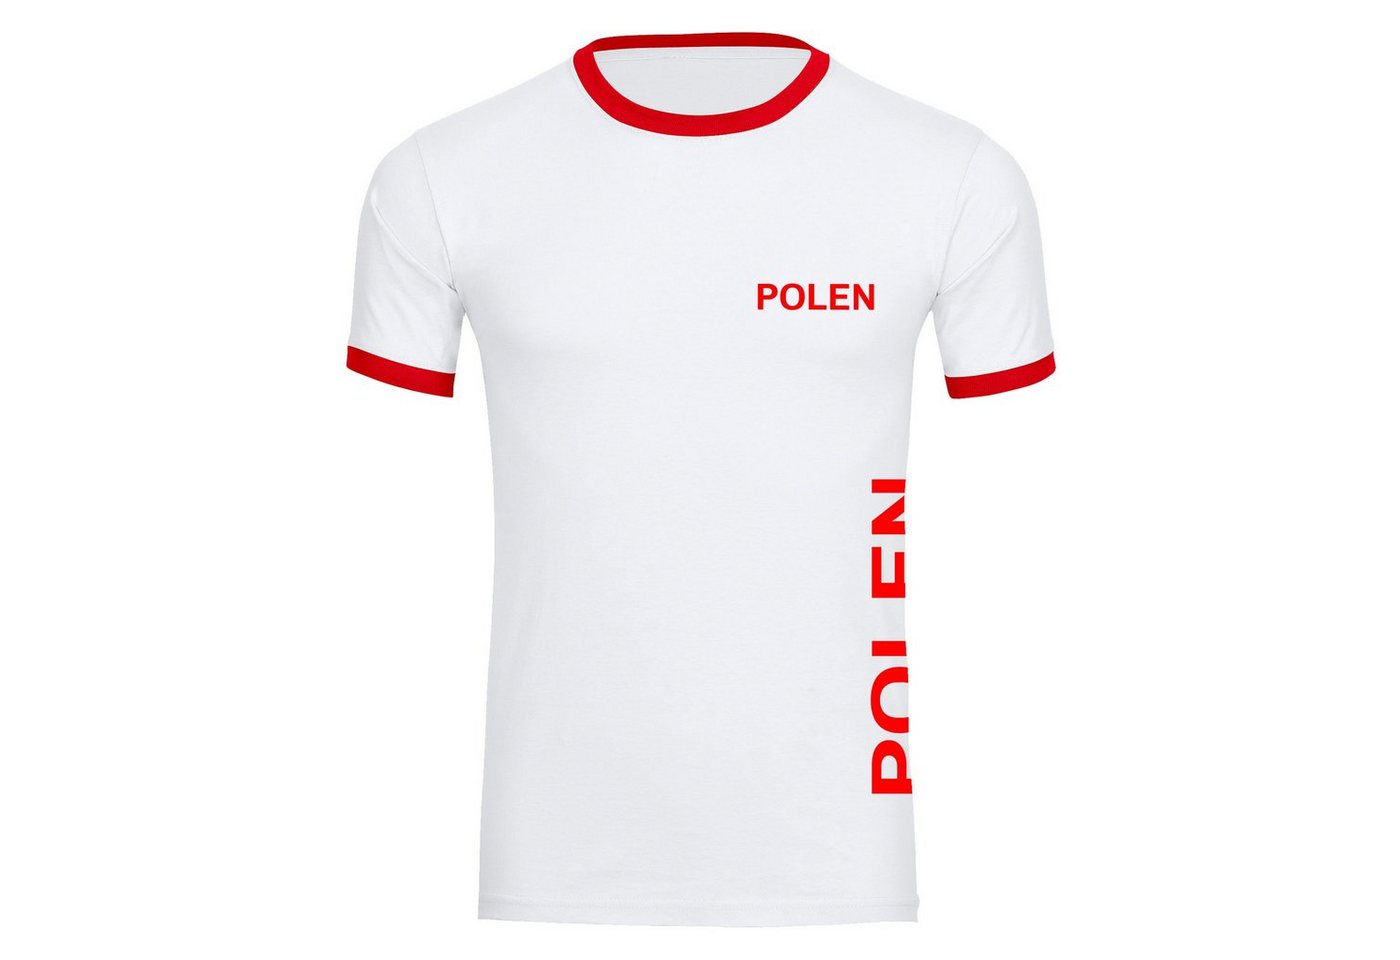 multifanshop T-Shirt Kontrast Polen - Brust & Seite - Männer von multifanshop